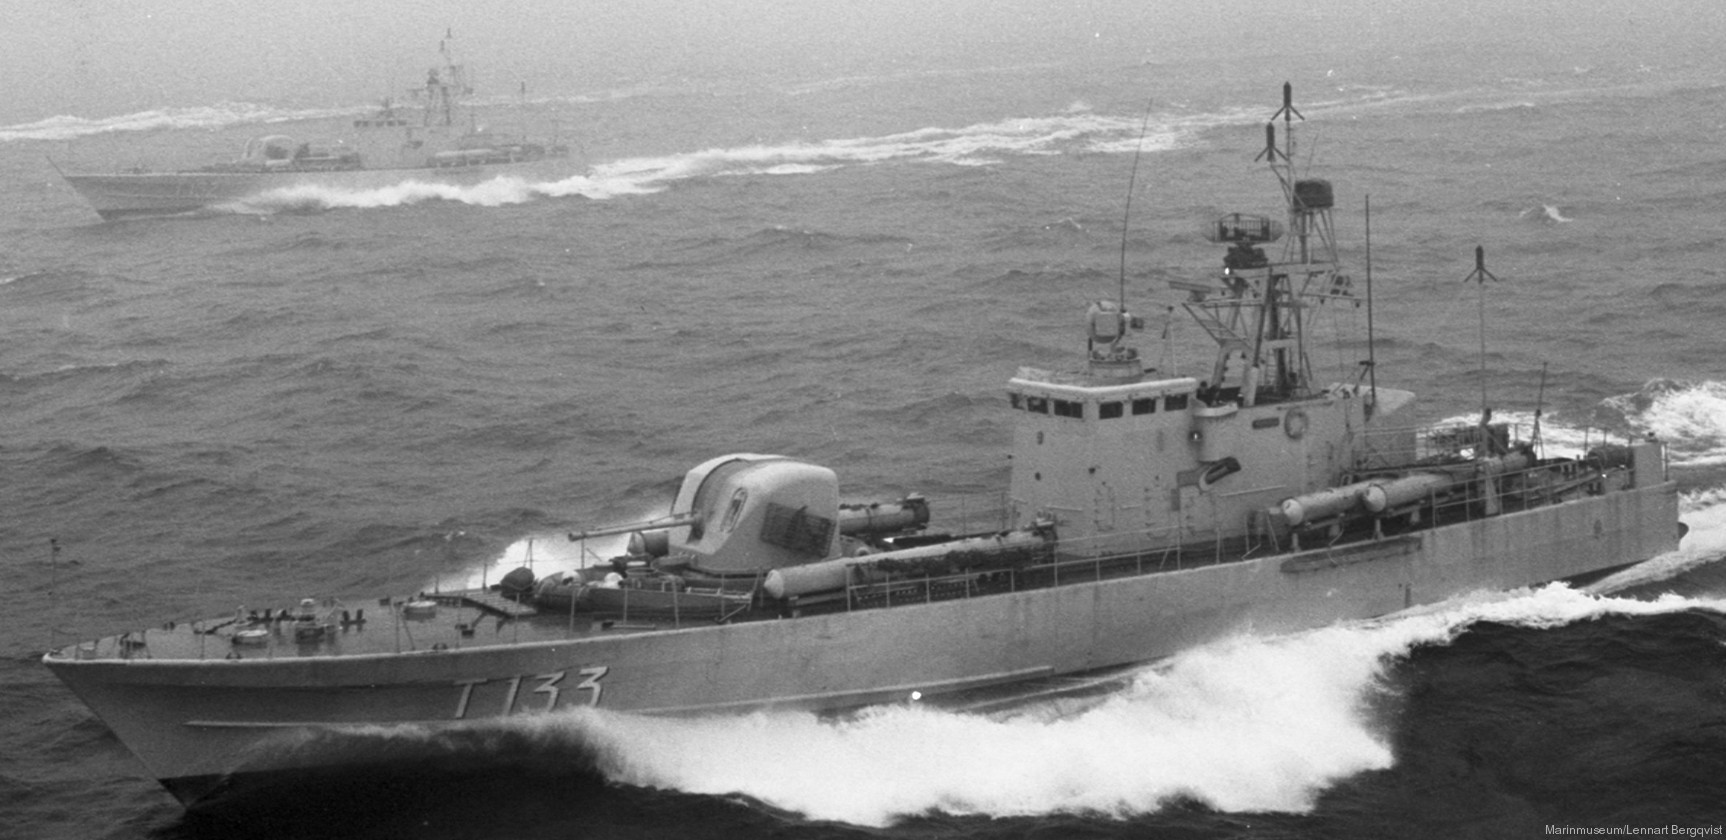 t133 norrtälje hswms hms norrköping class fast attack craft torpedo missile patrol boat swedish navy svenska marinen 07